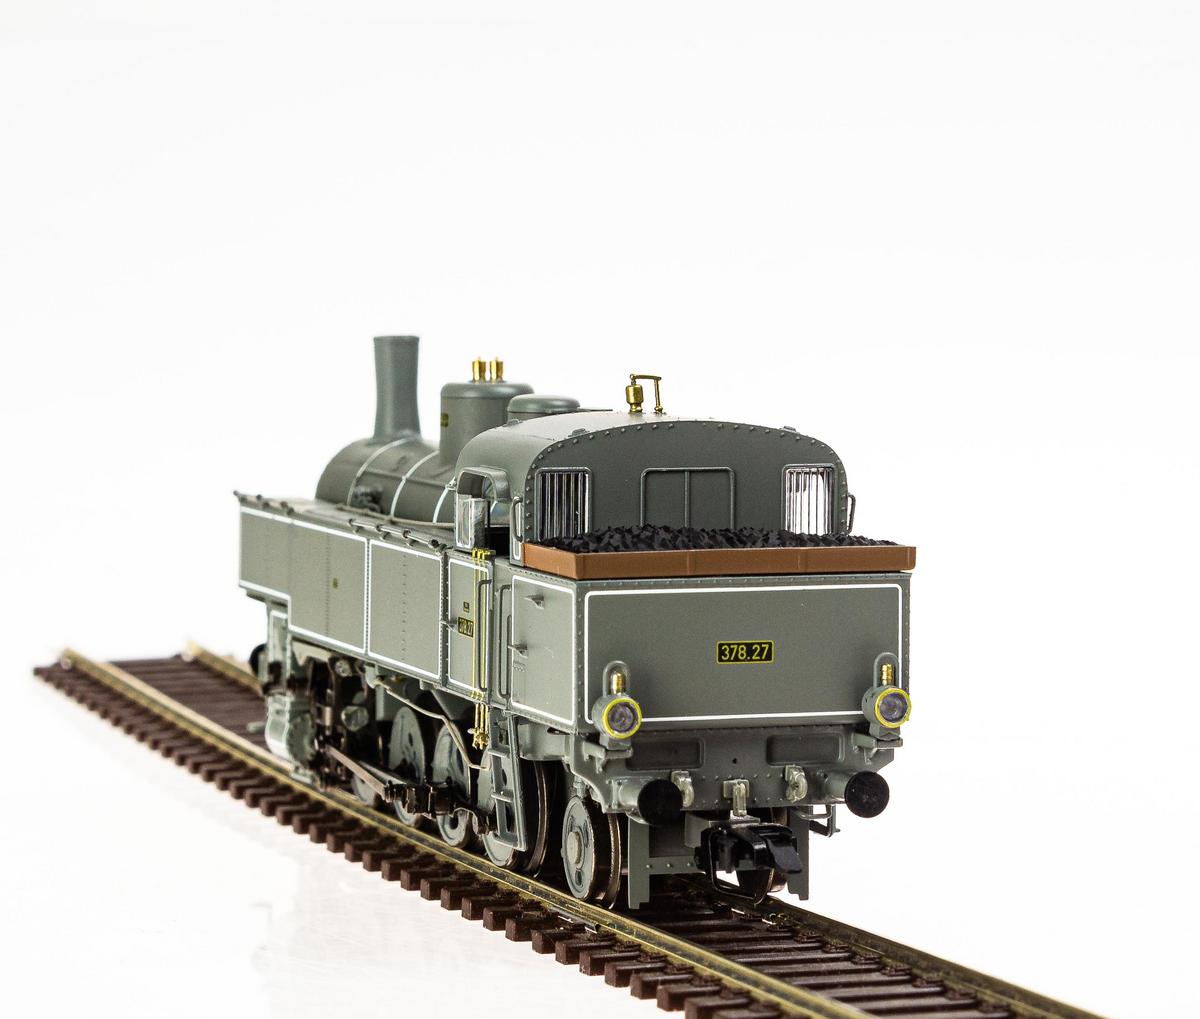 Memoba - Produktdetail Liliput li131409 BBÖ Dampflokomotive 378.27, Epoche  II, Rundschlot, Fotoanstrich, Formänderung | Overalls